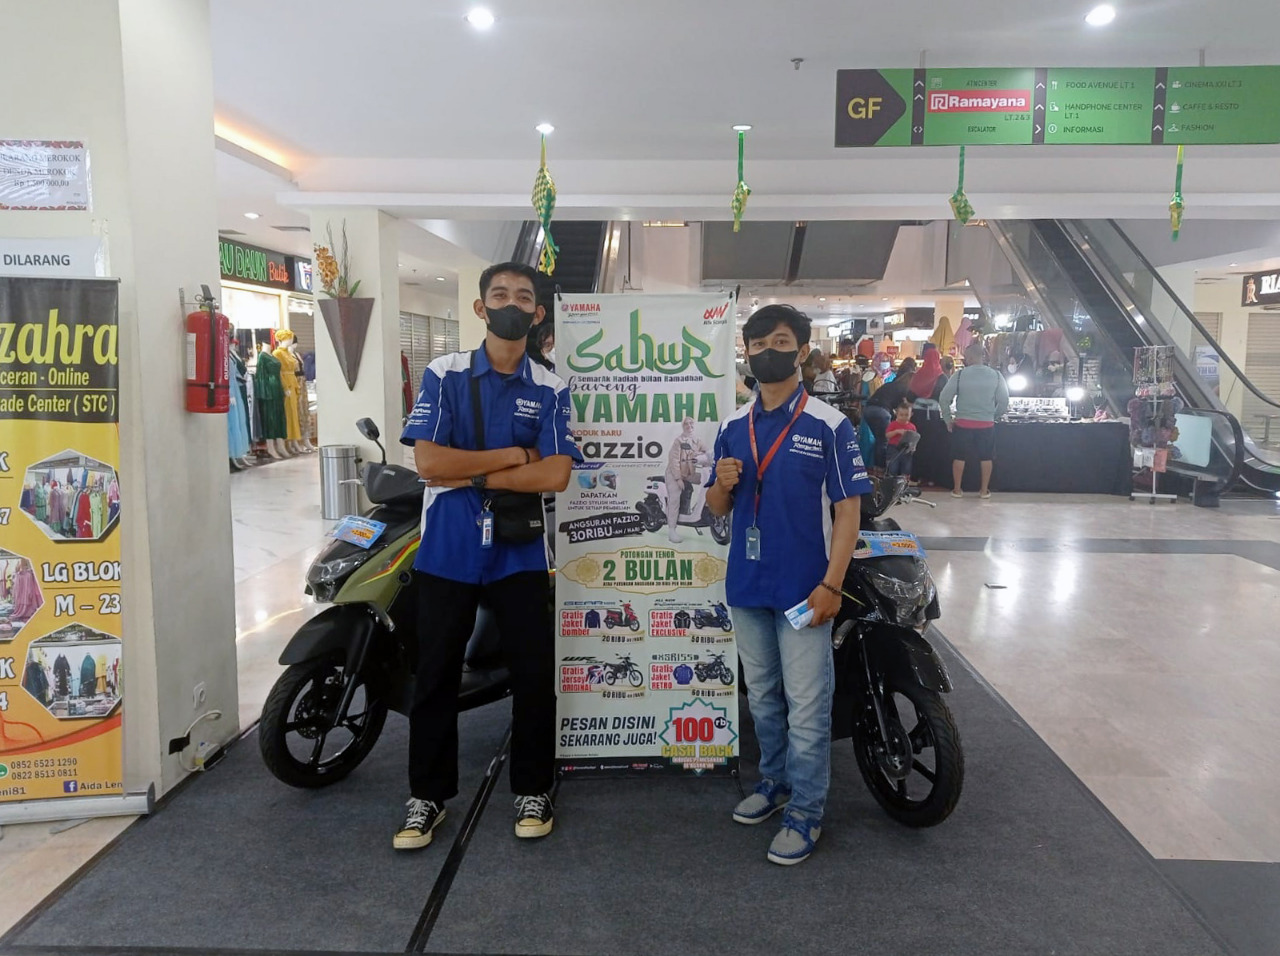 Lagi-lagi, Yamaha Berikan Promo Ramadan di Sudirman Trade Center